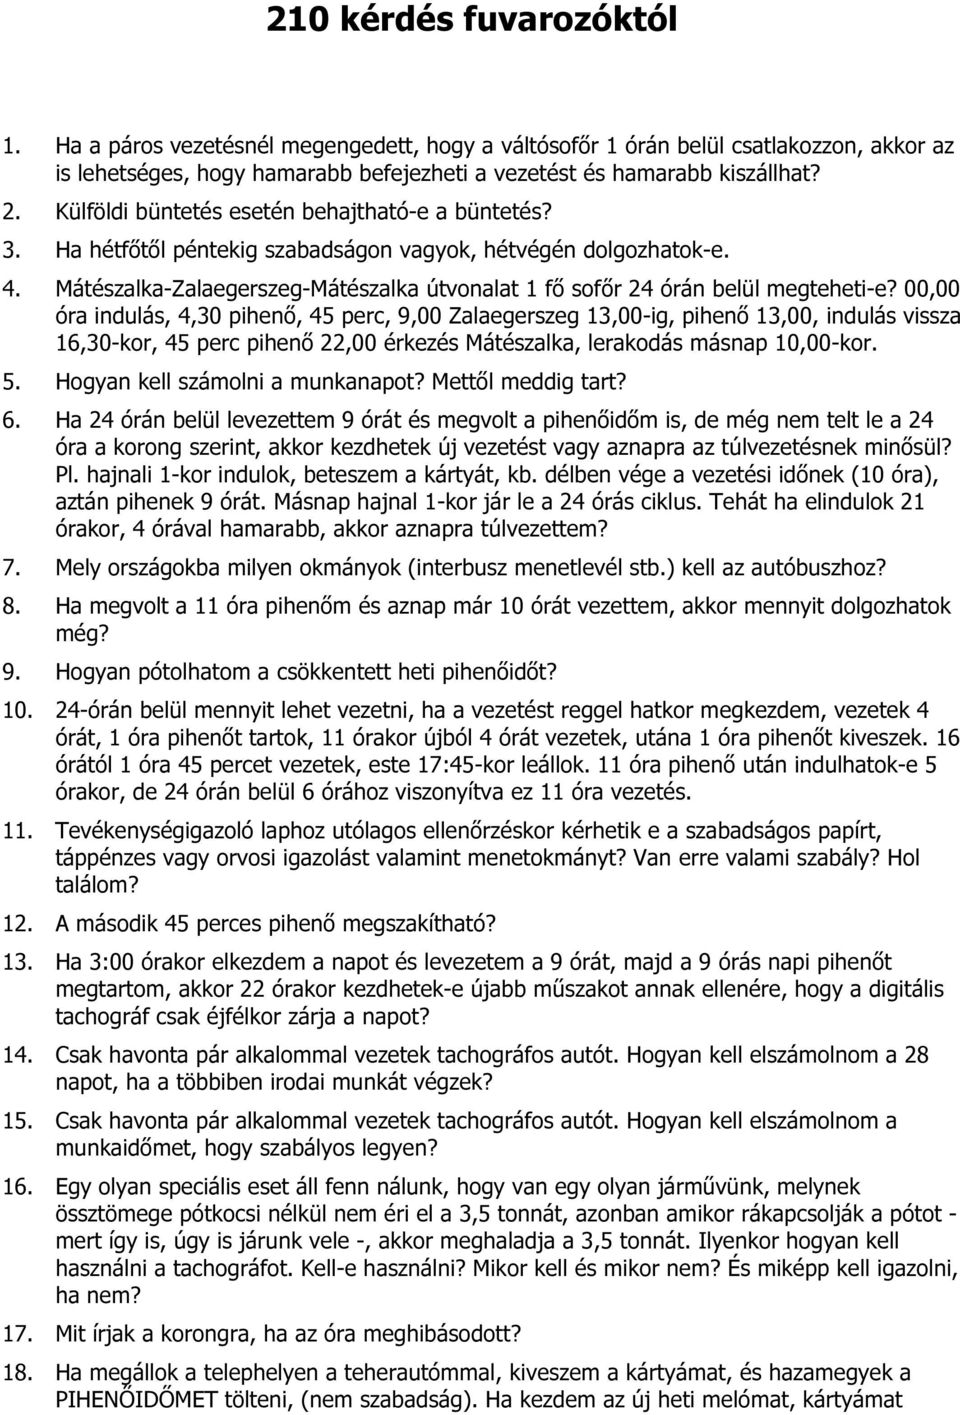 210 kérdés fuvarozóktól - PDF Free Download